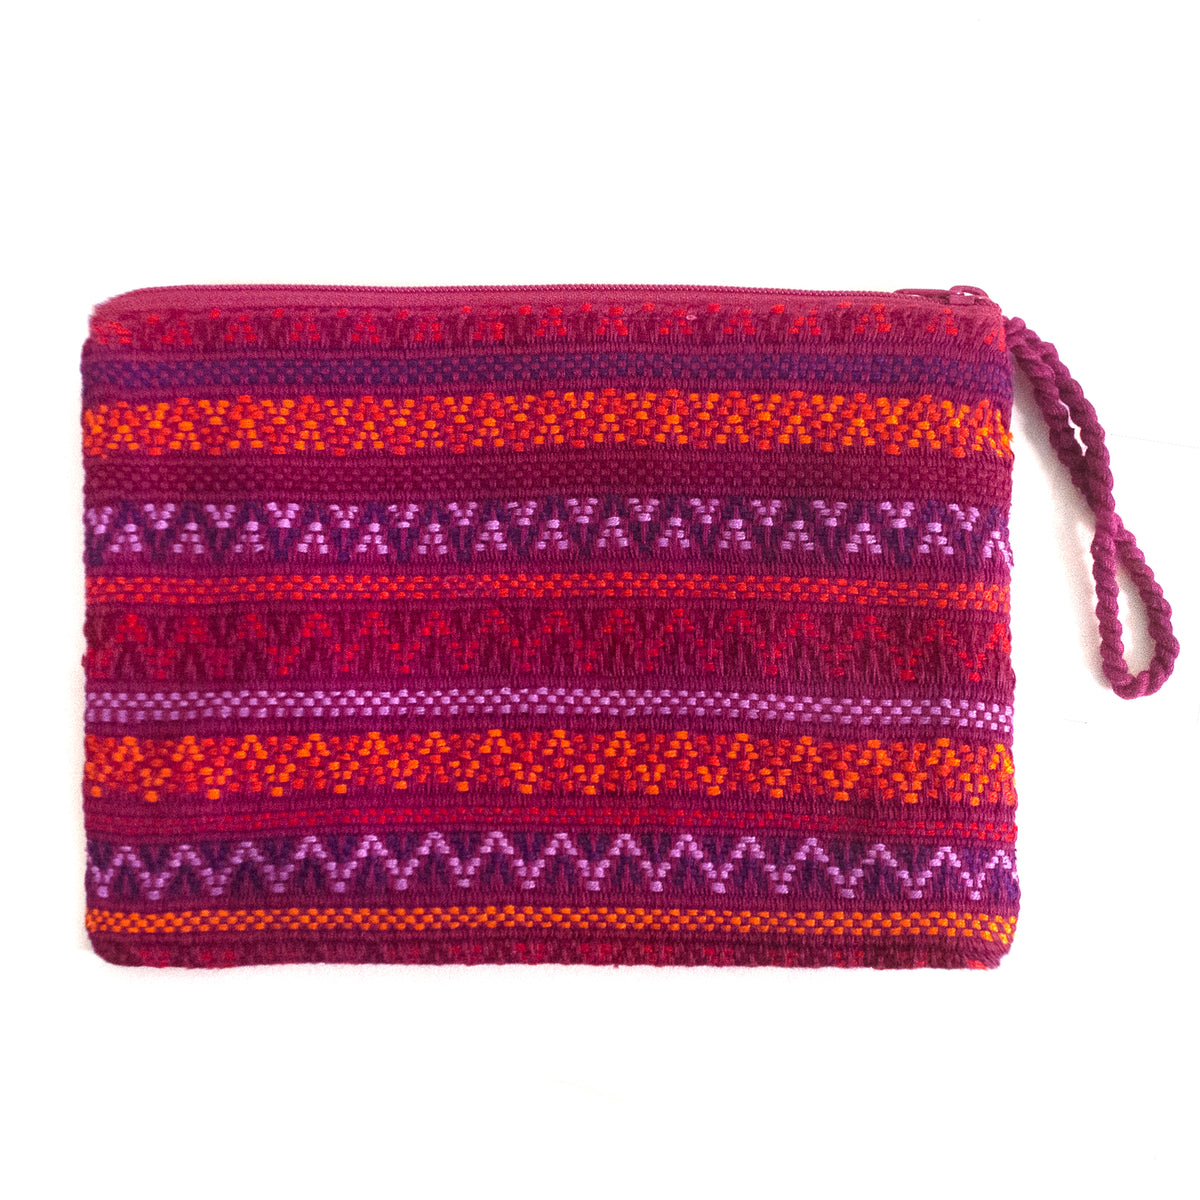 handwoven brocade cosmetic bag | Mayan Hands